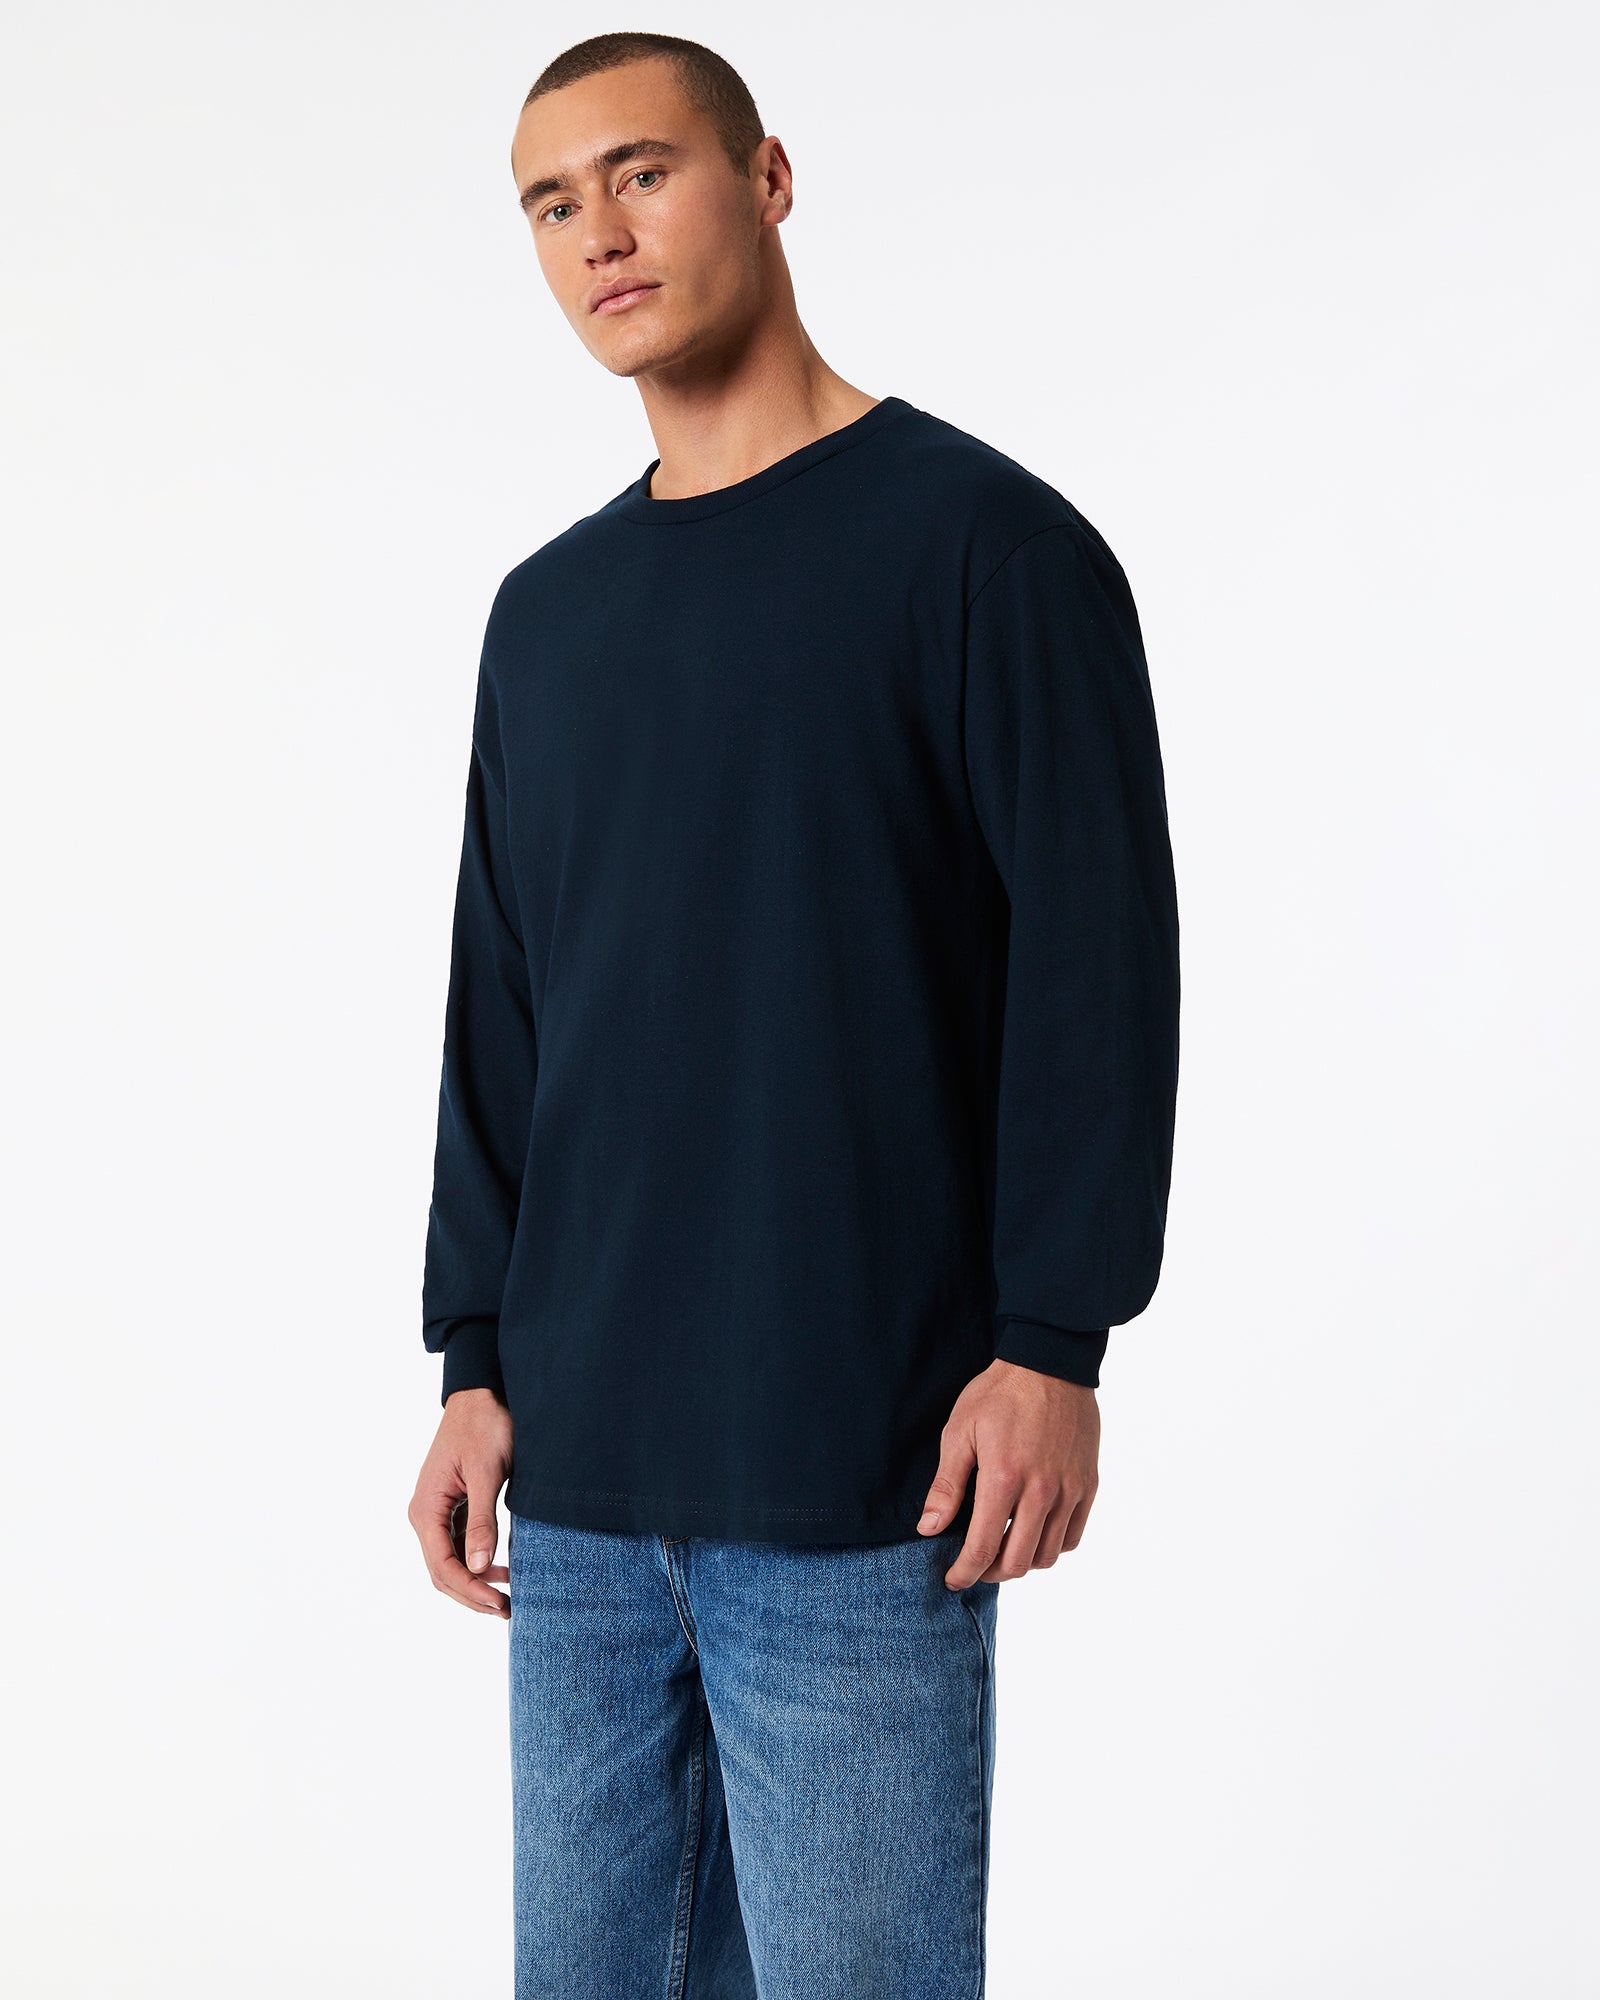 Heavyweight Unisex Long Sleeve T-Shirt - True Navy